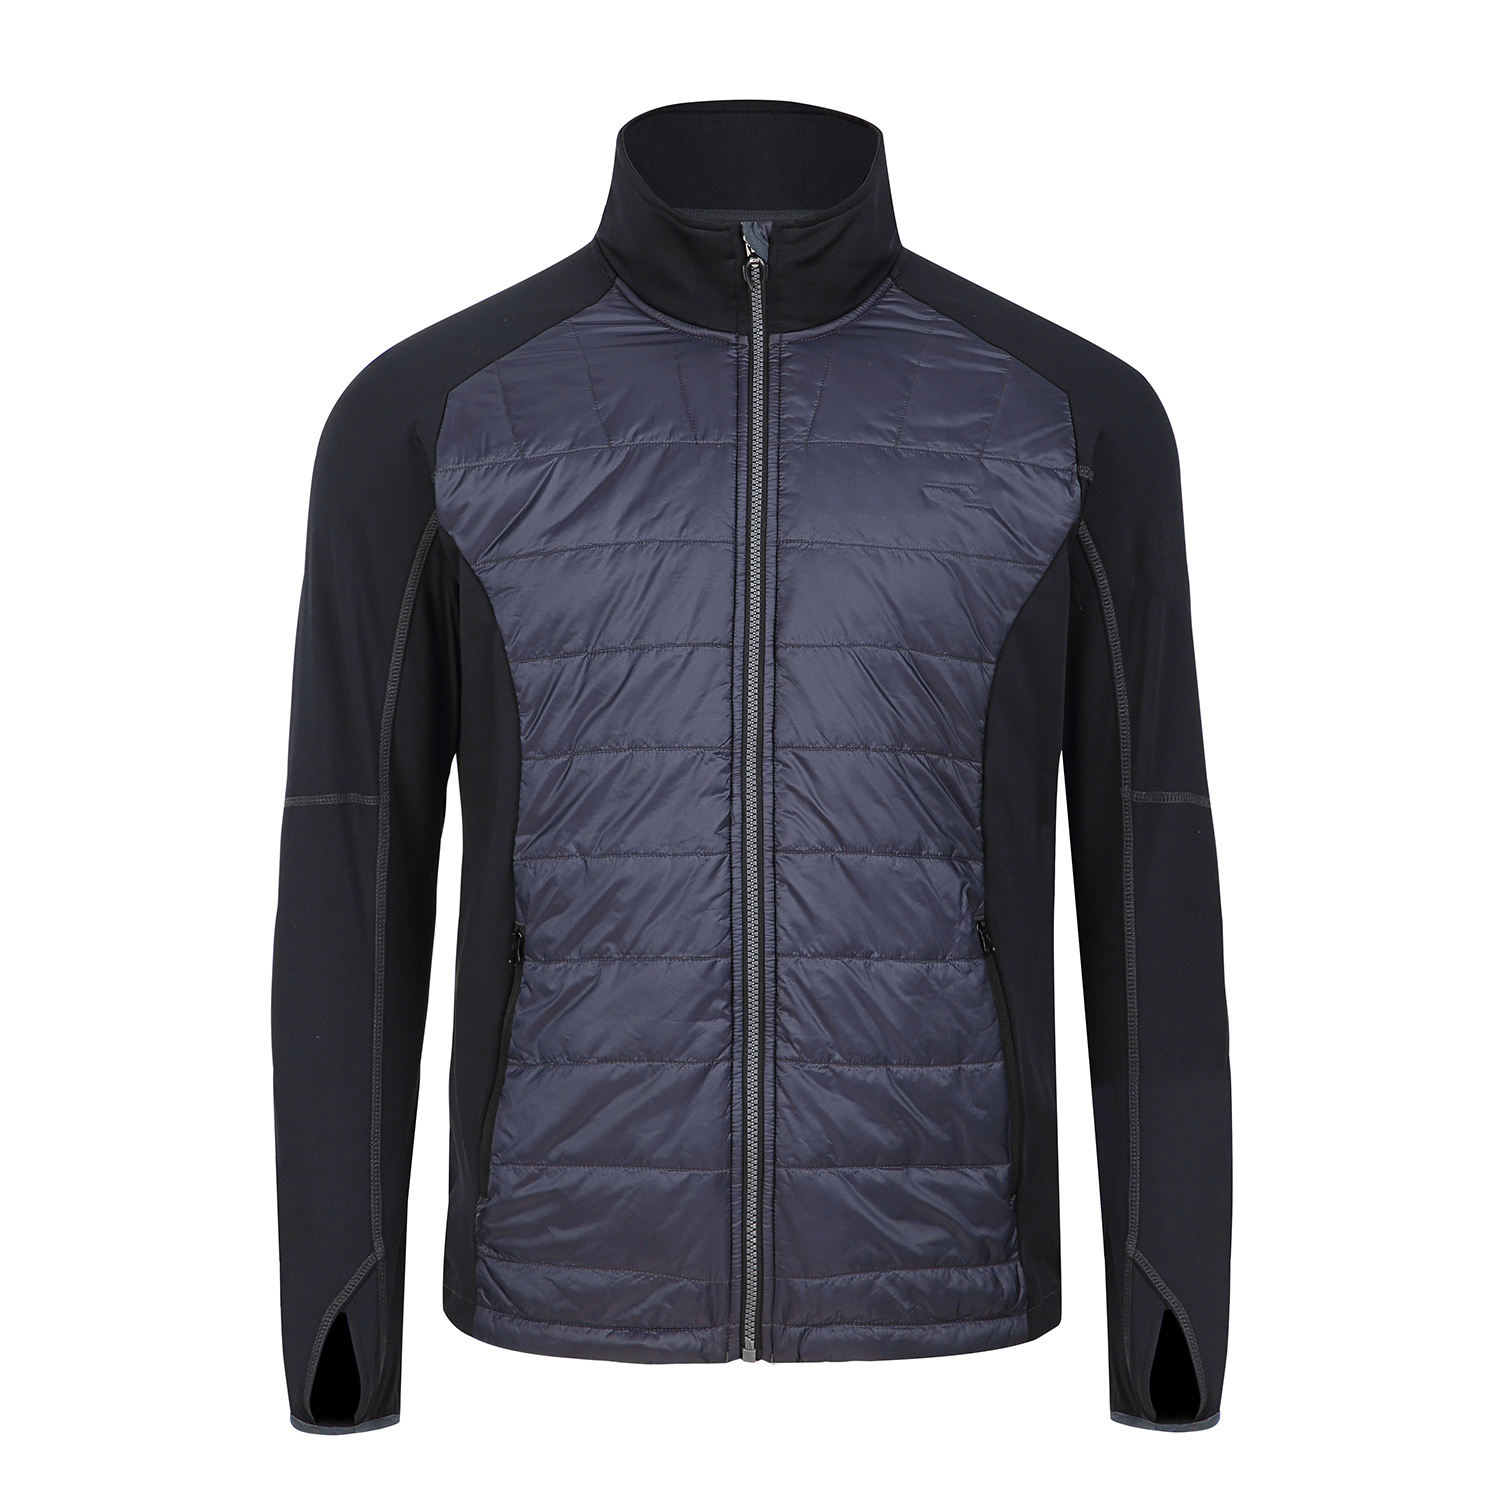 hybrid padding jacket-unisex jacket